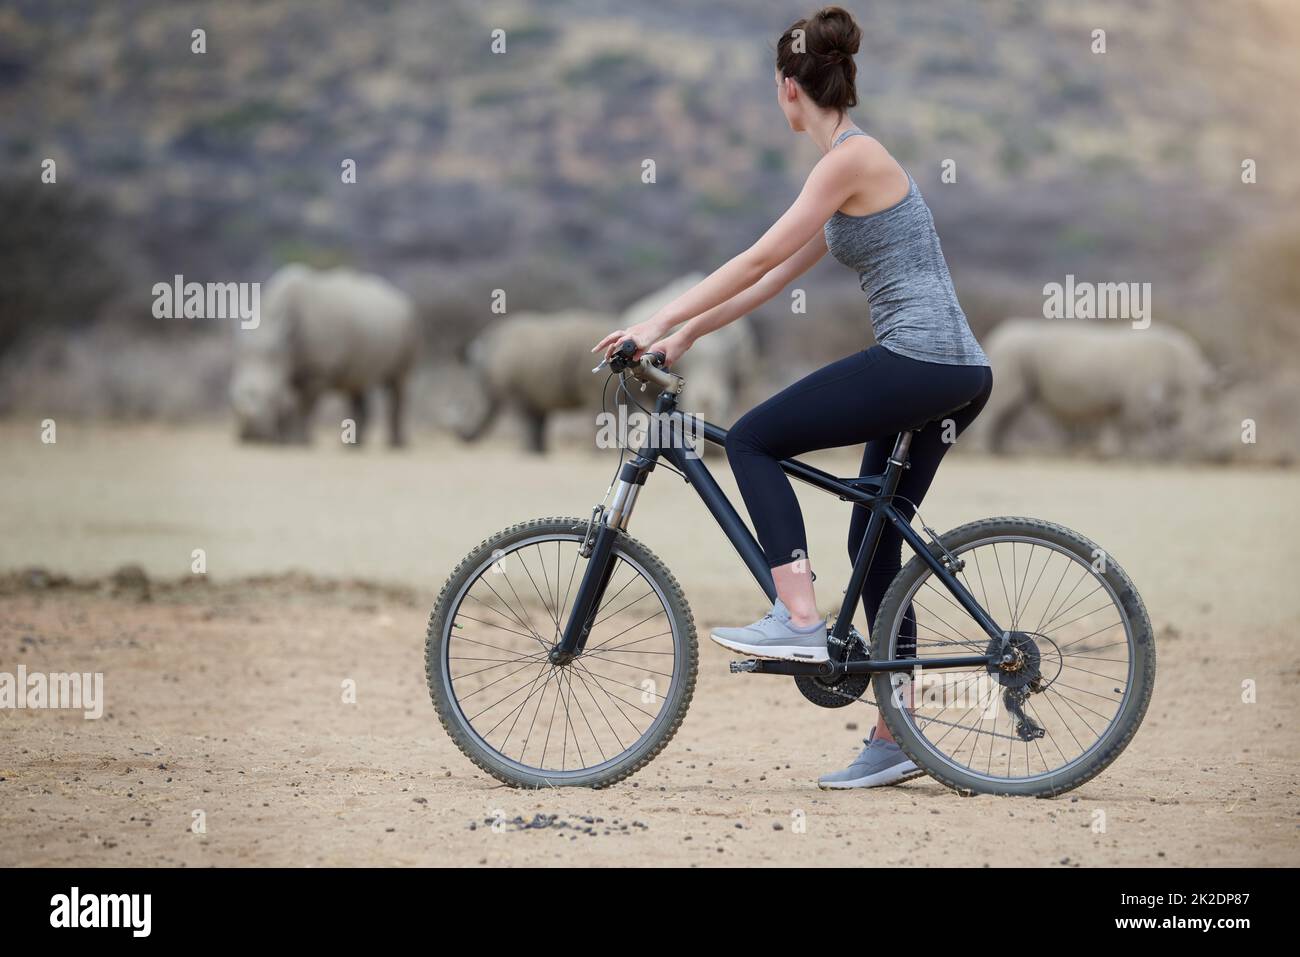 Ungezähmtes Afrika genießen. Aufnahme einer jungen Frau auf einem Fahrrad, die eine Gruppe Nashörner im Veld ansieht. Stockfoto